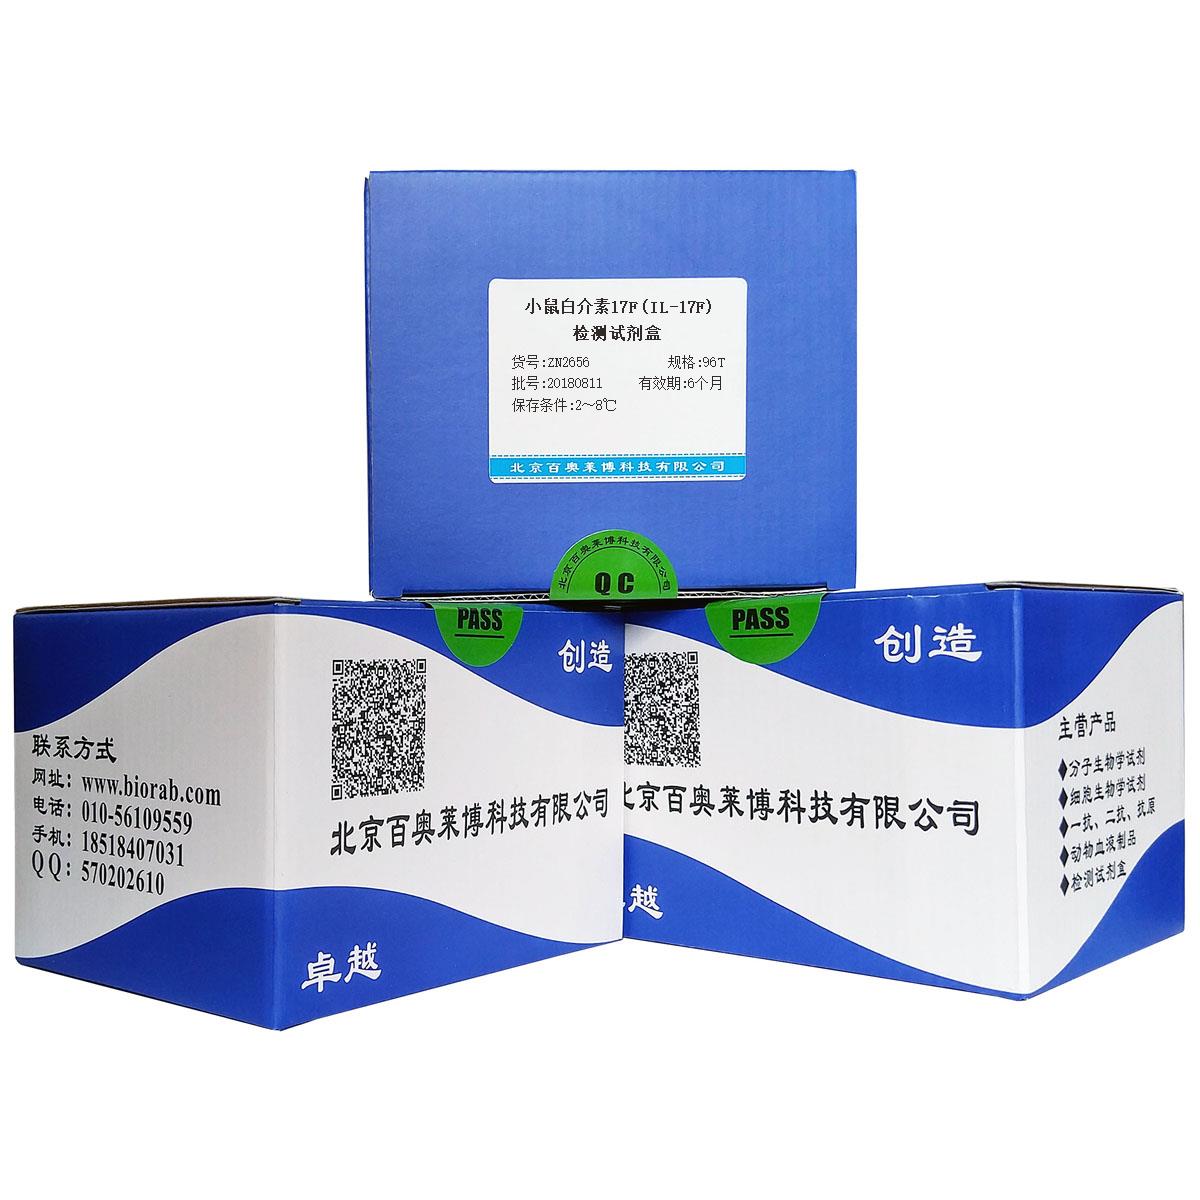 小鼠白介素17F(IL-17F)检测试剂盒